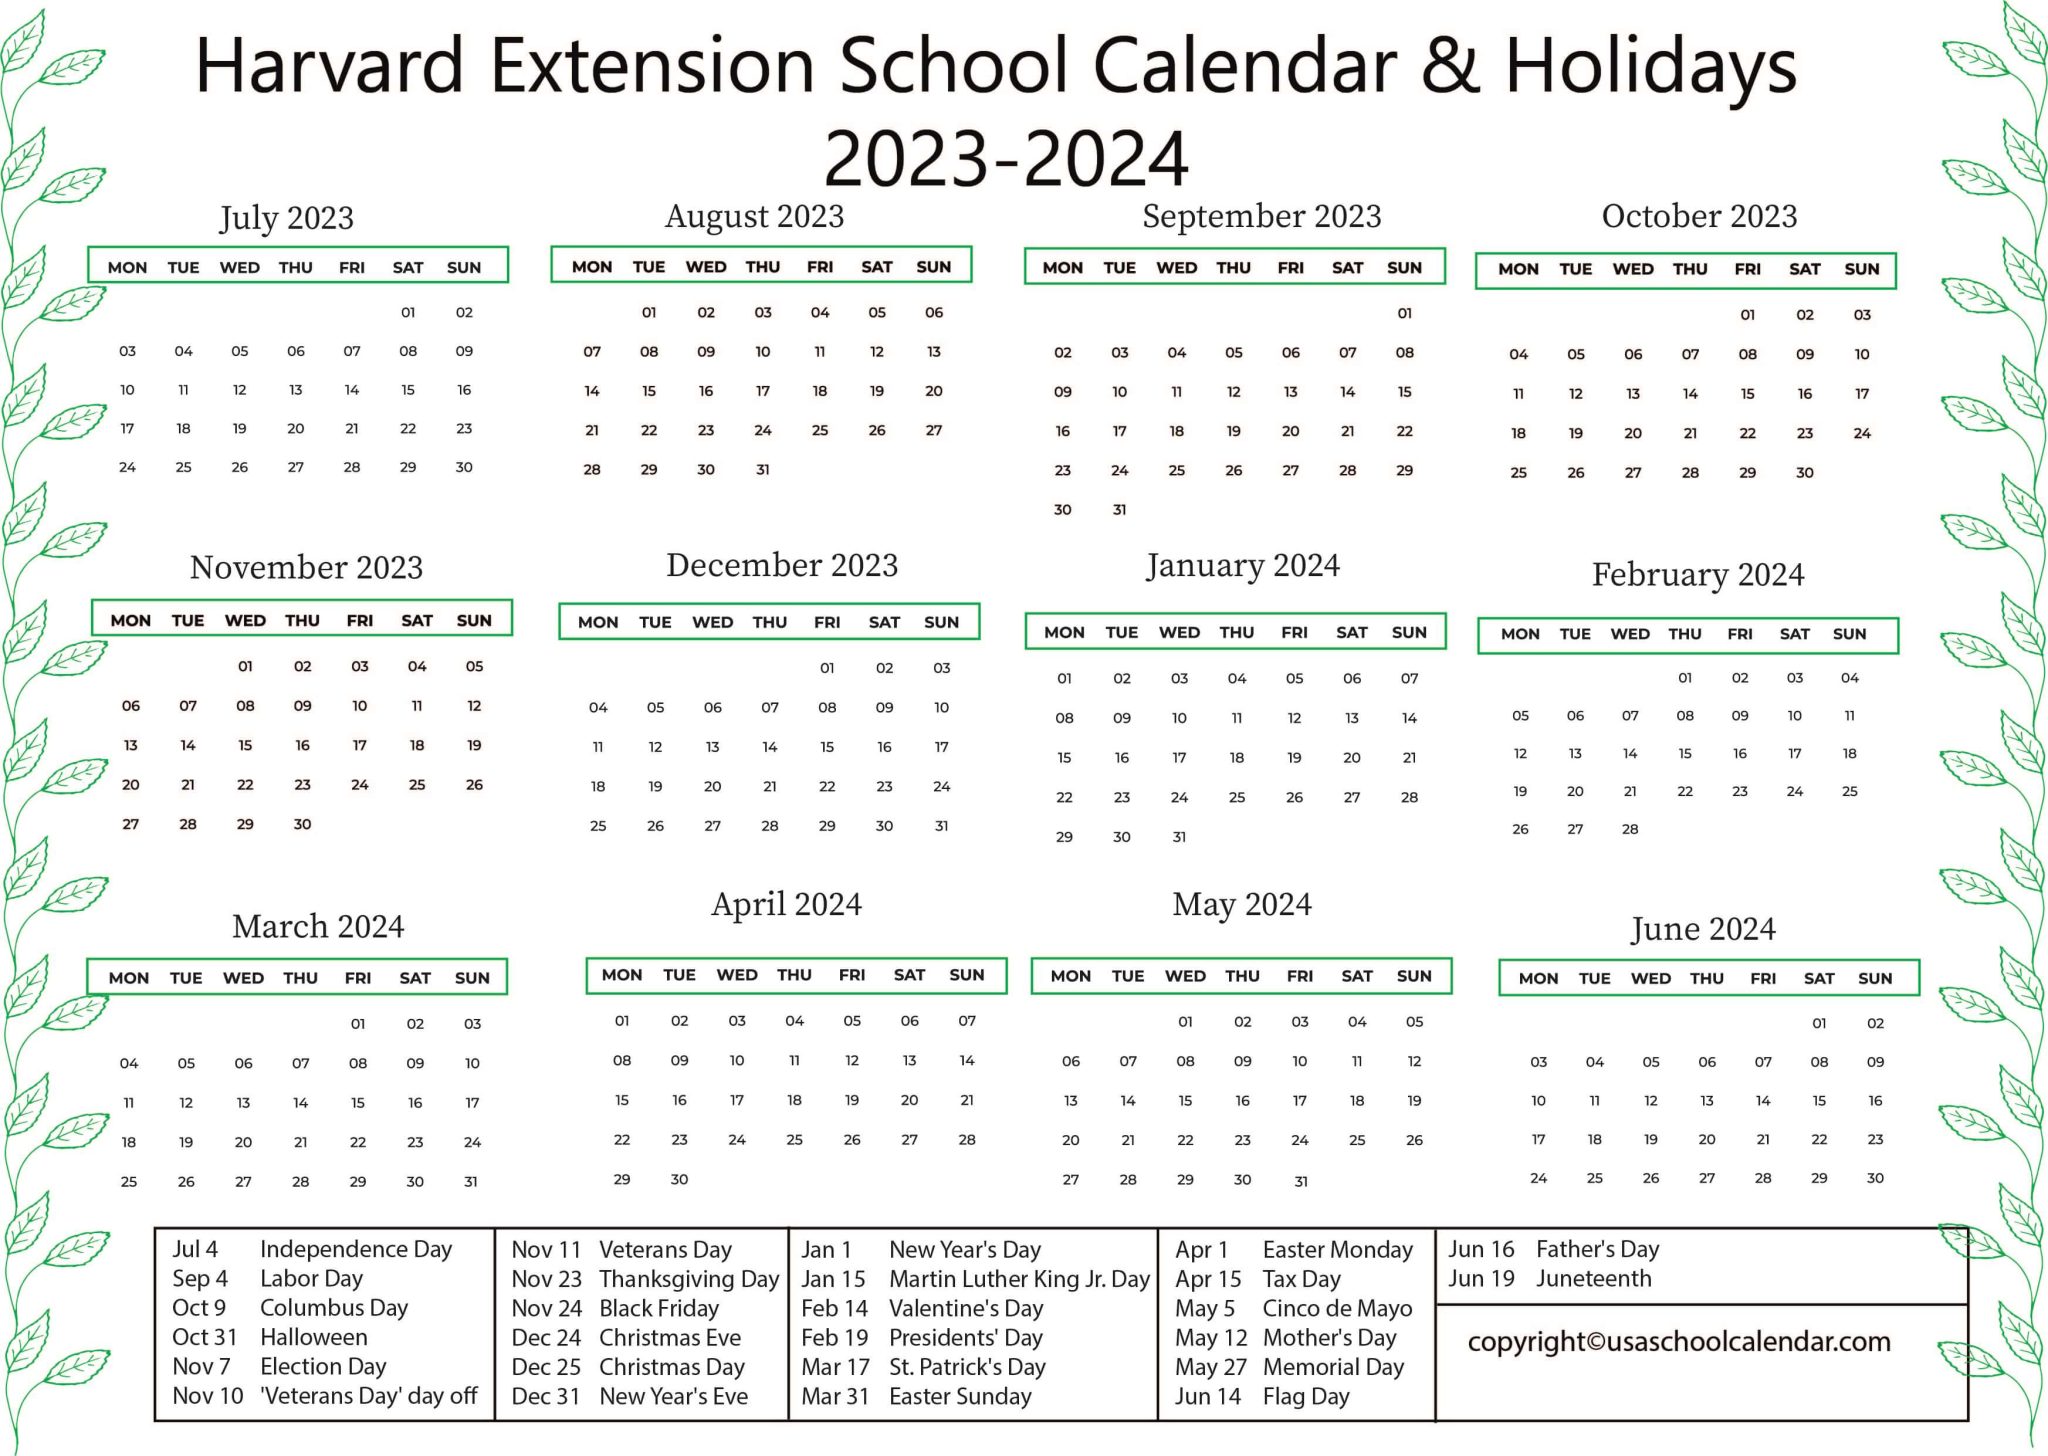 harvard-extension-school-calendar-holidays-2023-2024